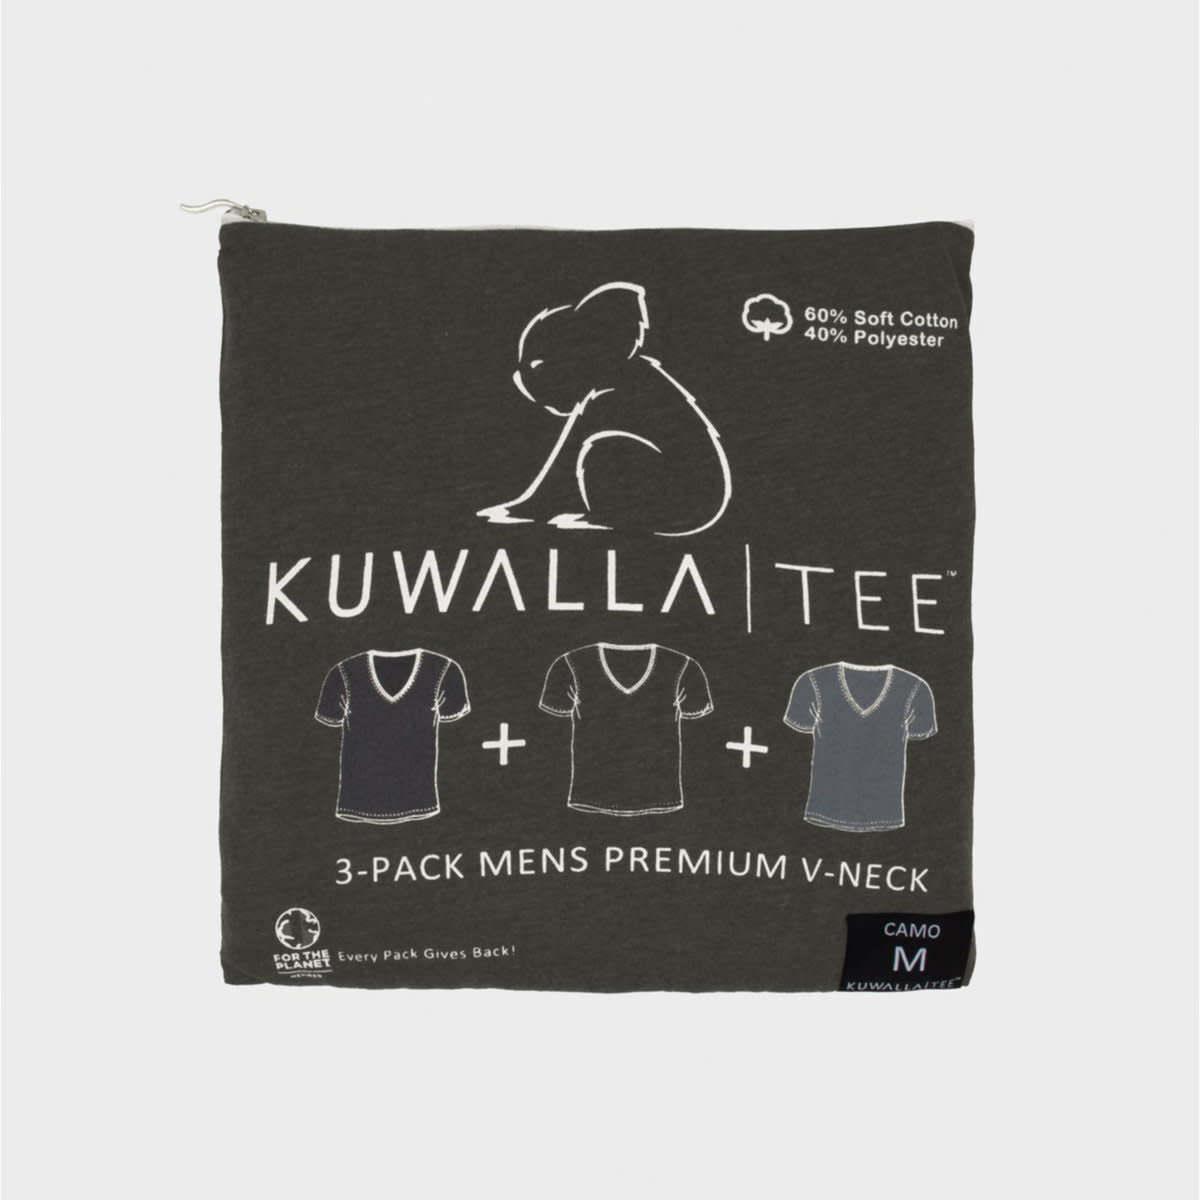 Kuwalla-Tee 3-Pack V-Neck Camo